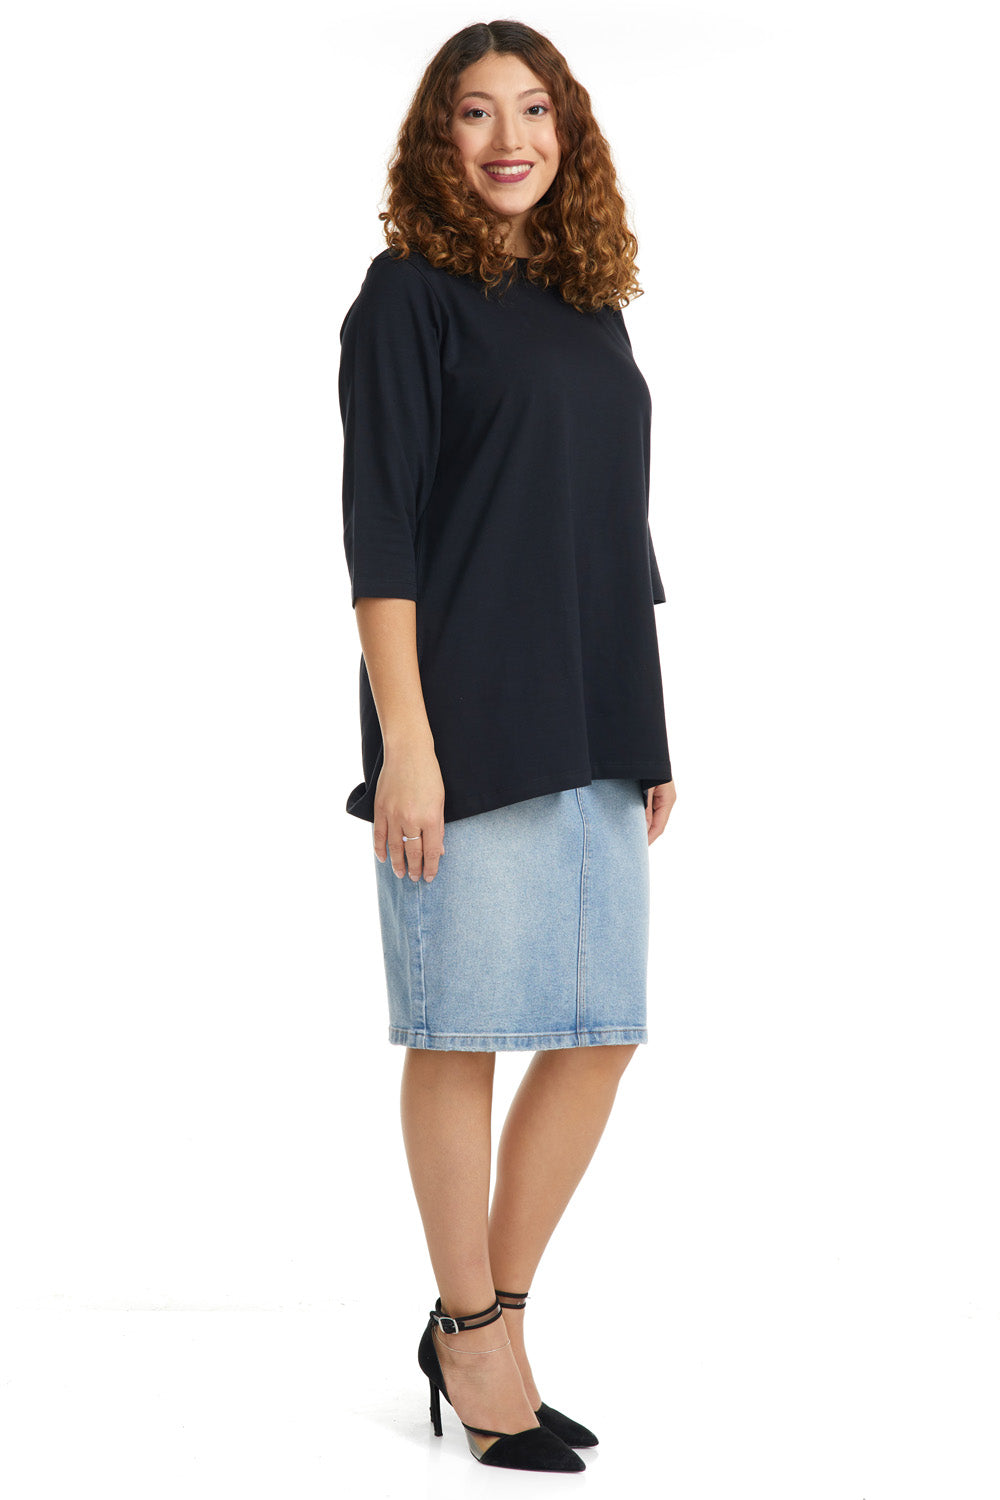 Esteez ¾ Sleeve Cotton Spandex Loose Fit Shirt for WOMEN - JET BLACK